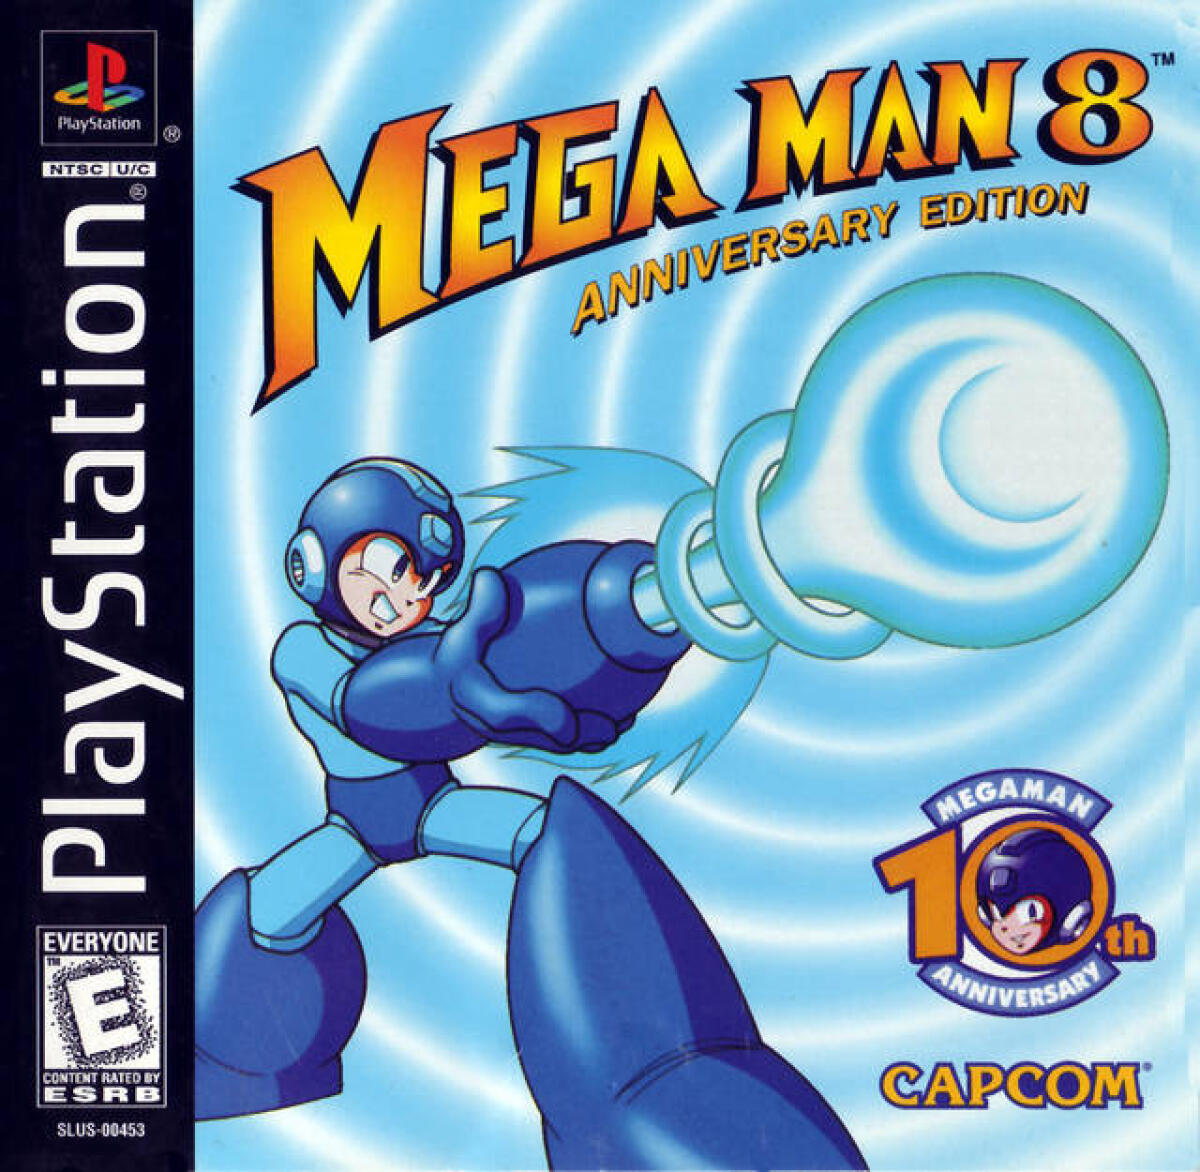 Megaman 8 est sorti en 1996 au Japon et surtout en 1997 aux Etats-Unis, soit dix ans après le premier épisode. L'édition anniversaire collector comprend des dessins prépatoires inédits.